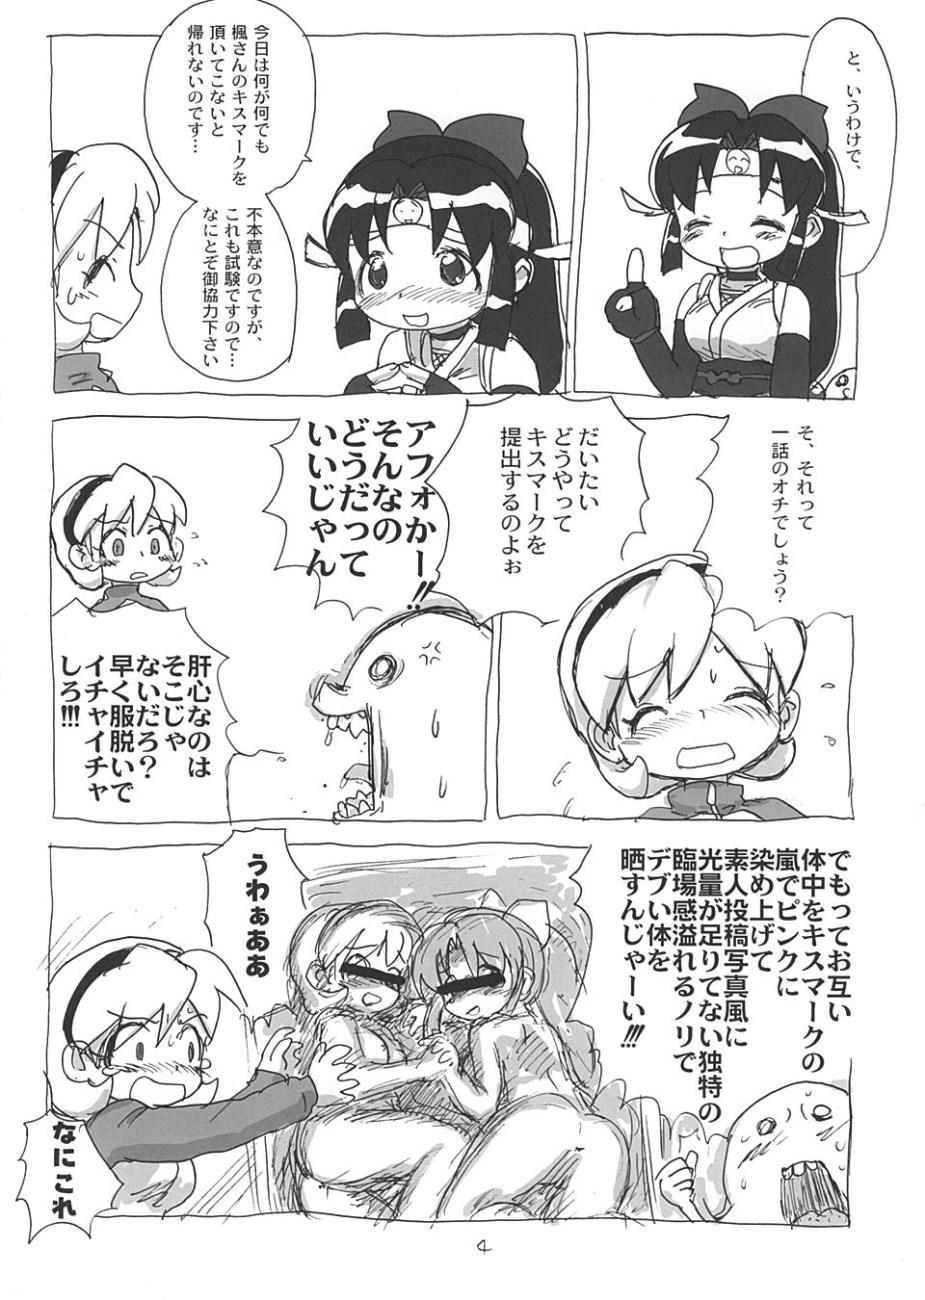 Tranny Sex SHINOBUBUKURO - 2x2 shinobuden Toilet - Page 3